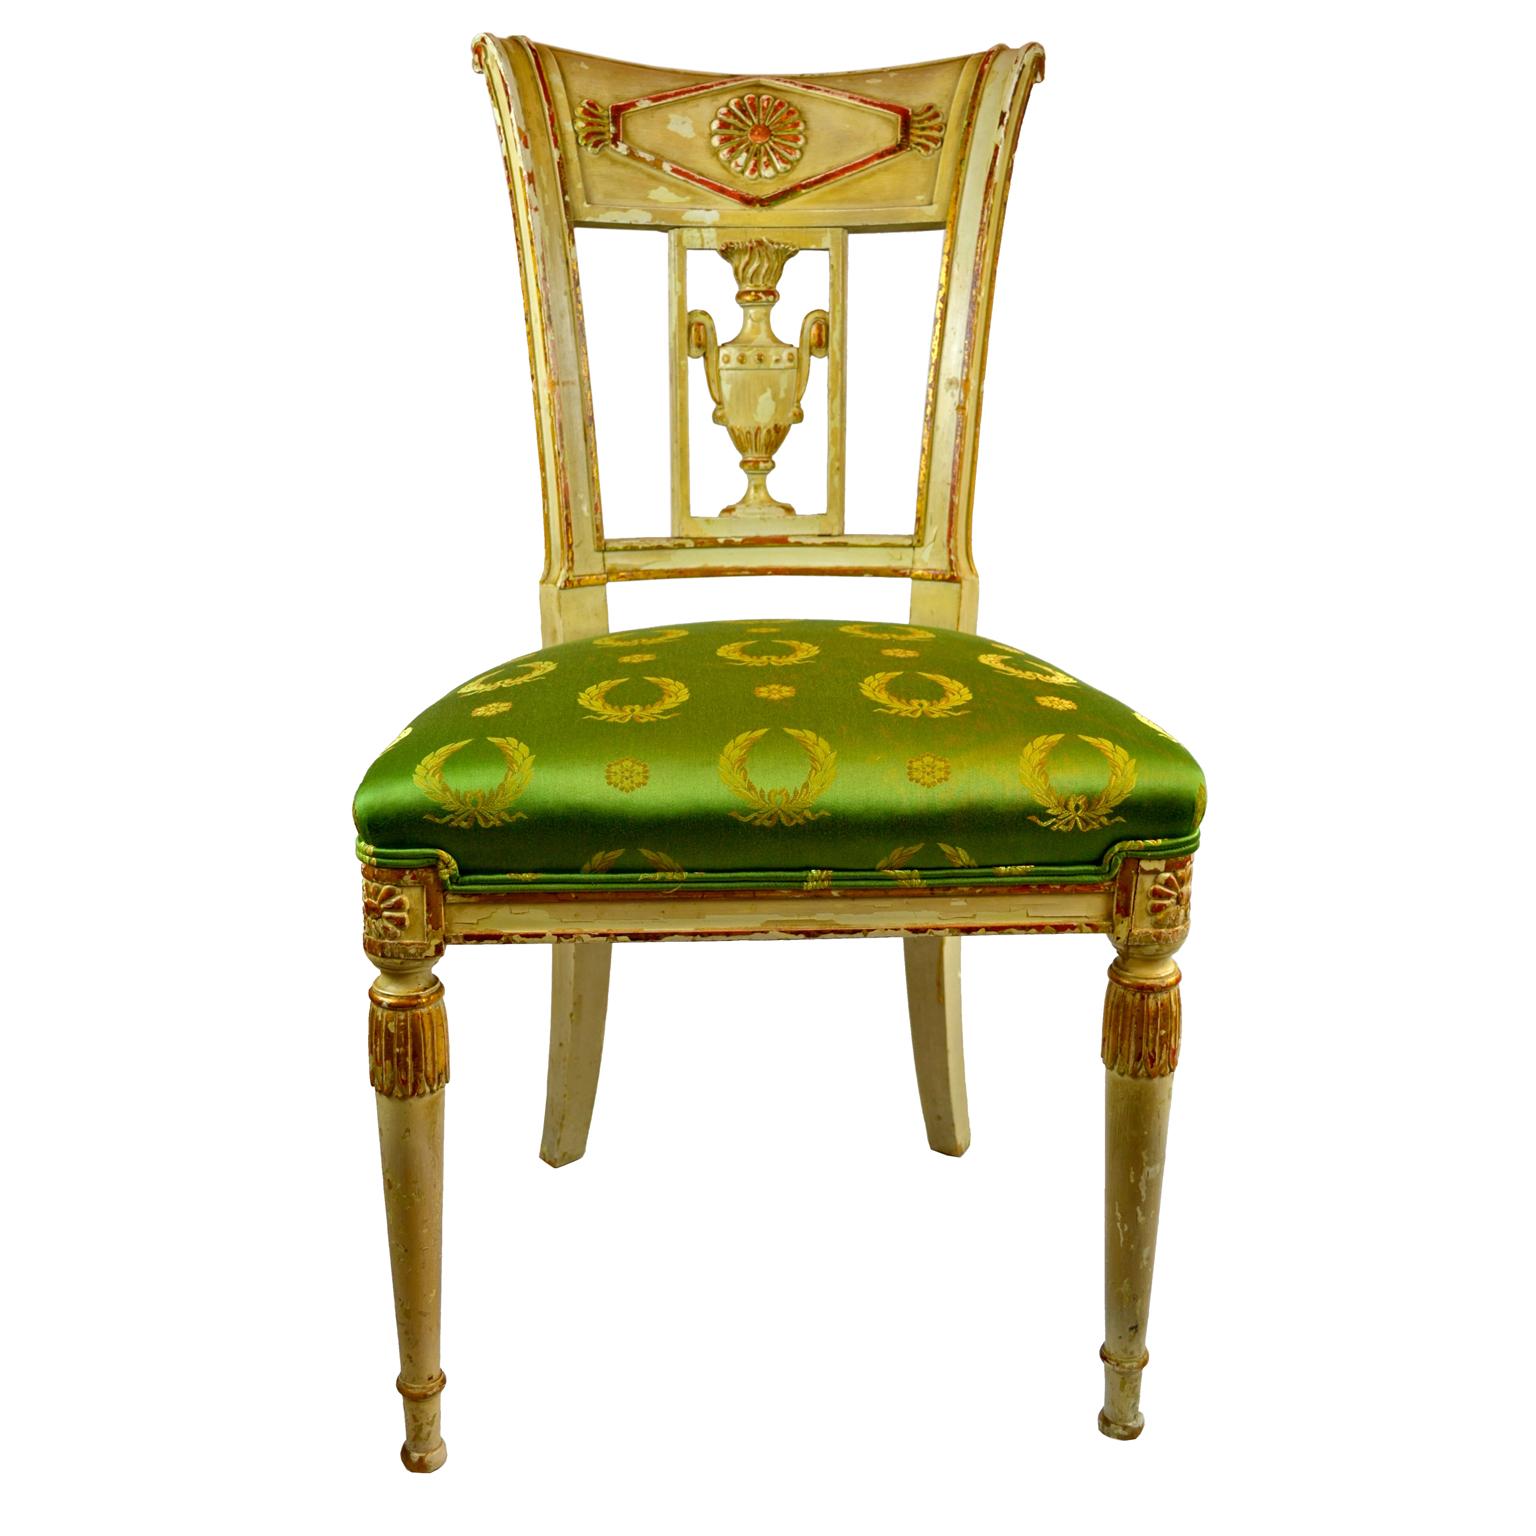 Chaise d'appoint française de la fin du XVIIIe siècle, d'époque Directoire, avec un cadre sculpté et peint en crème dorée. La dosseret avec une urne classique sculptée. Tapissé d'un tissu de soie Empire vert.